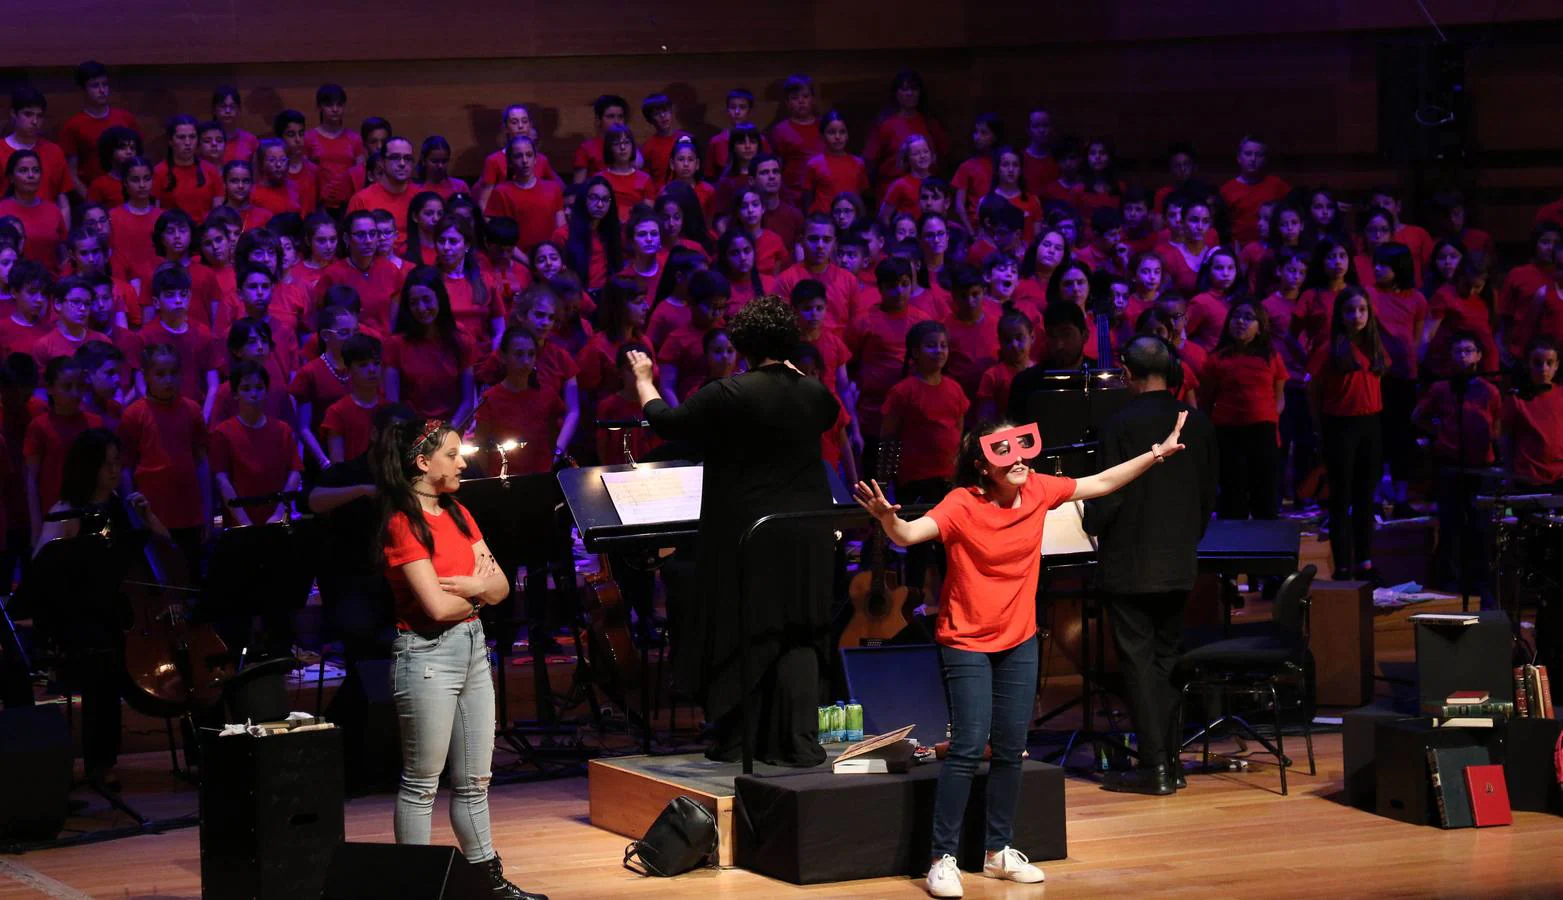 La novena edición del proyecto musical reúne a cerca de 3.600 escolares en torno a la cantata de Eduard Iniesta que celebra el centenario del poeta catalán